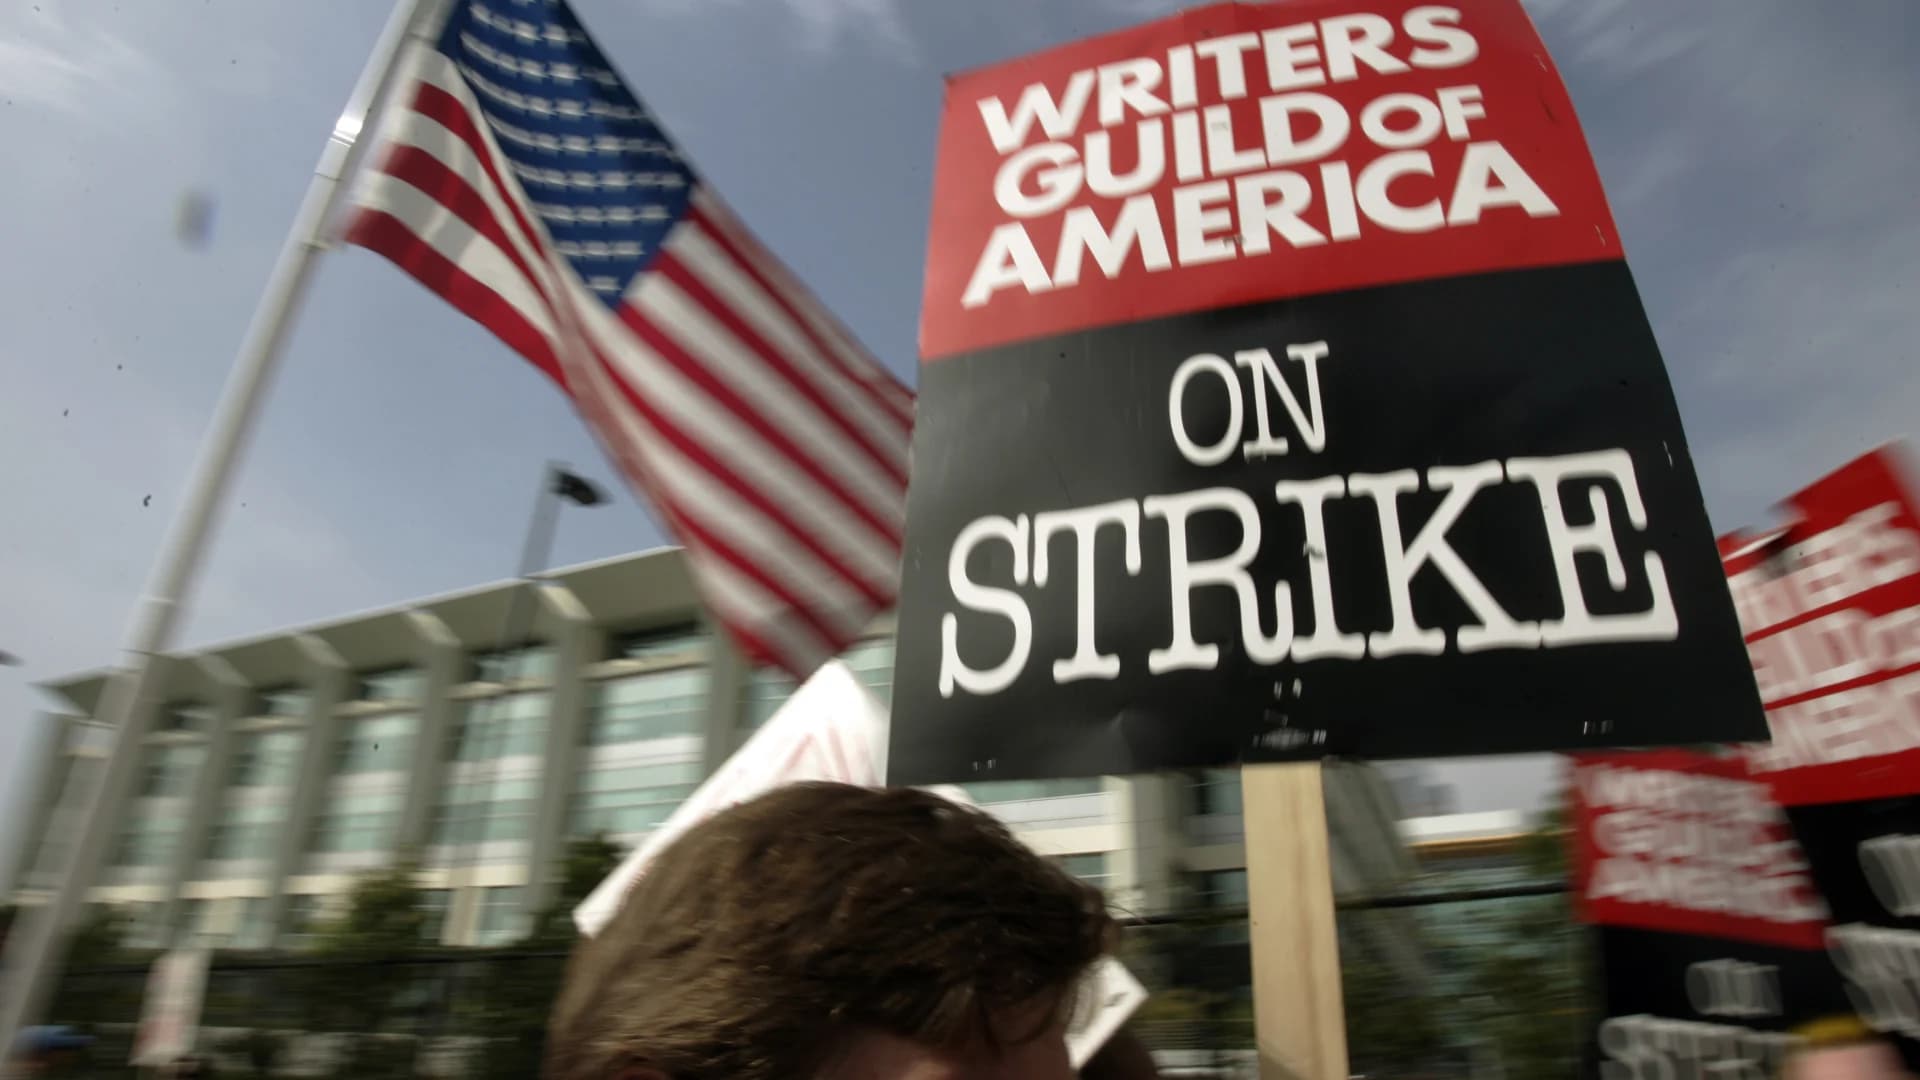 Hollywood writers, slam 'gig economy,' launching strike